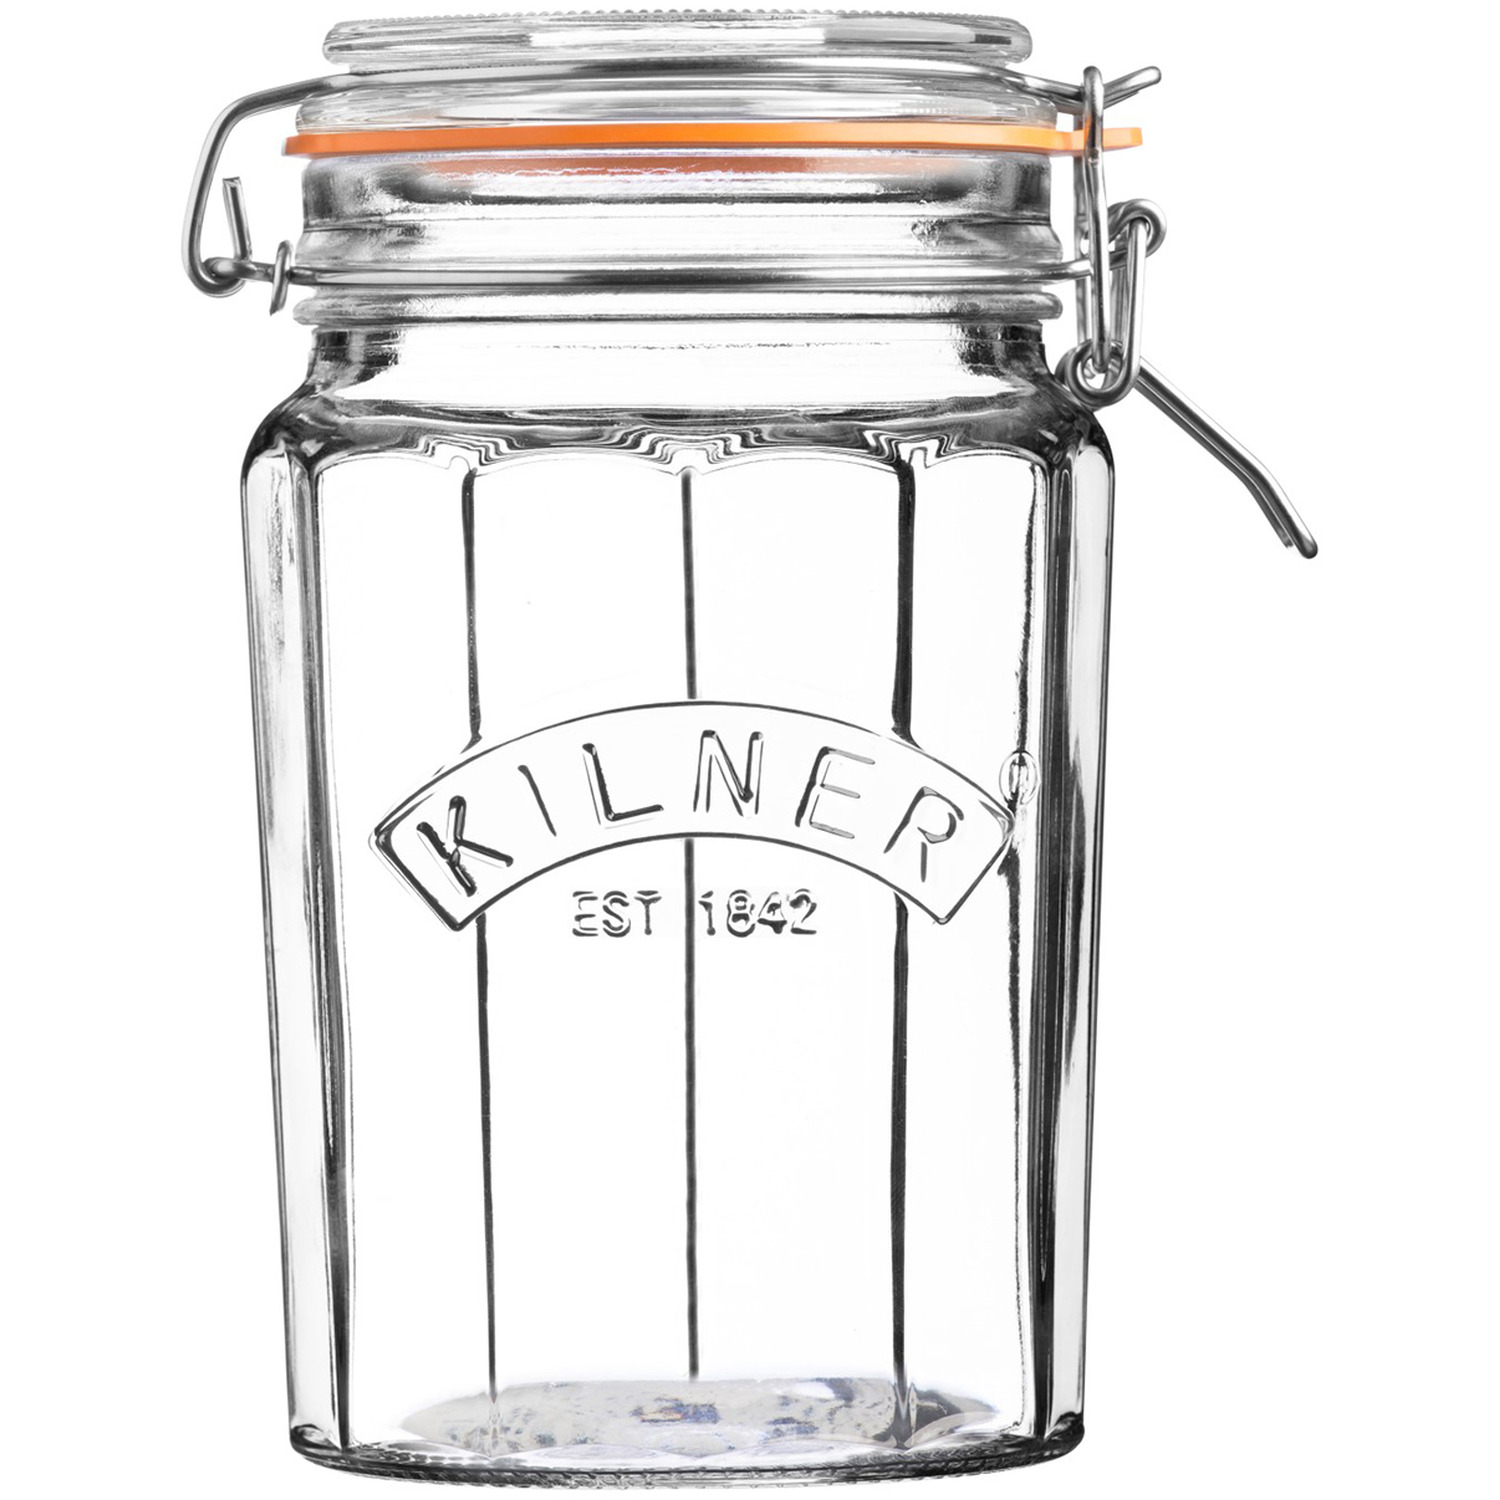 Kilner 950ml Storage Jar with Clip Top Lid Image 1